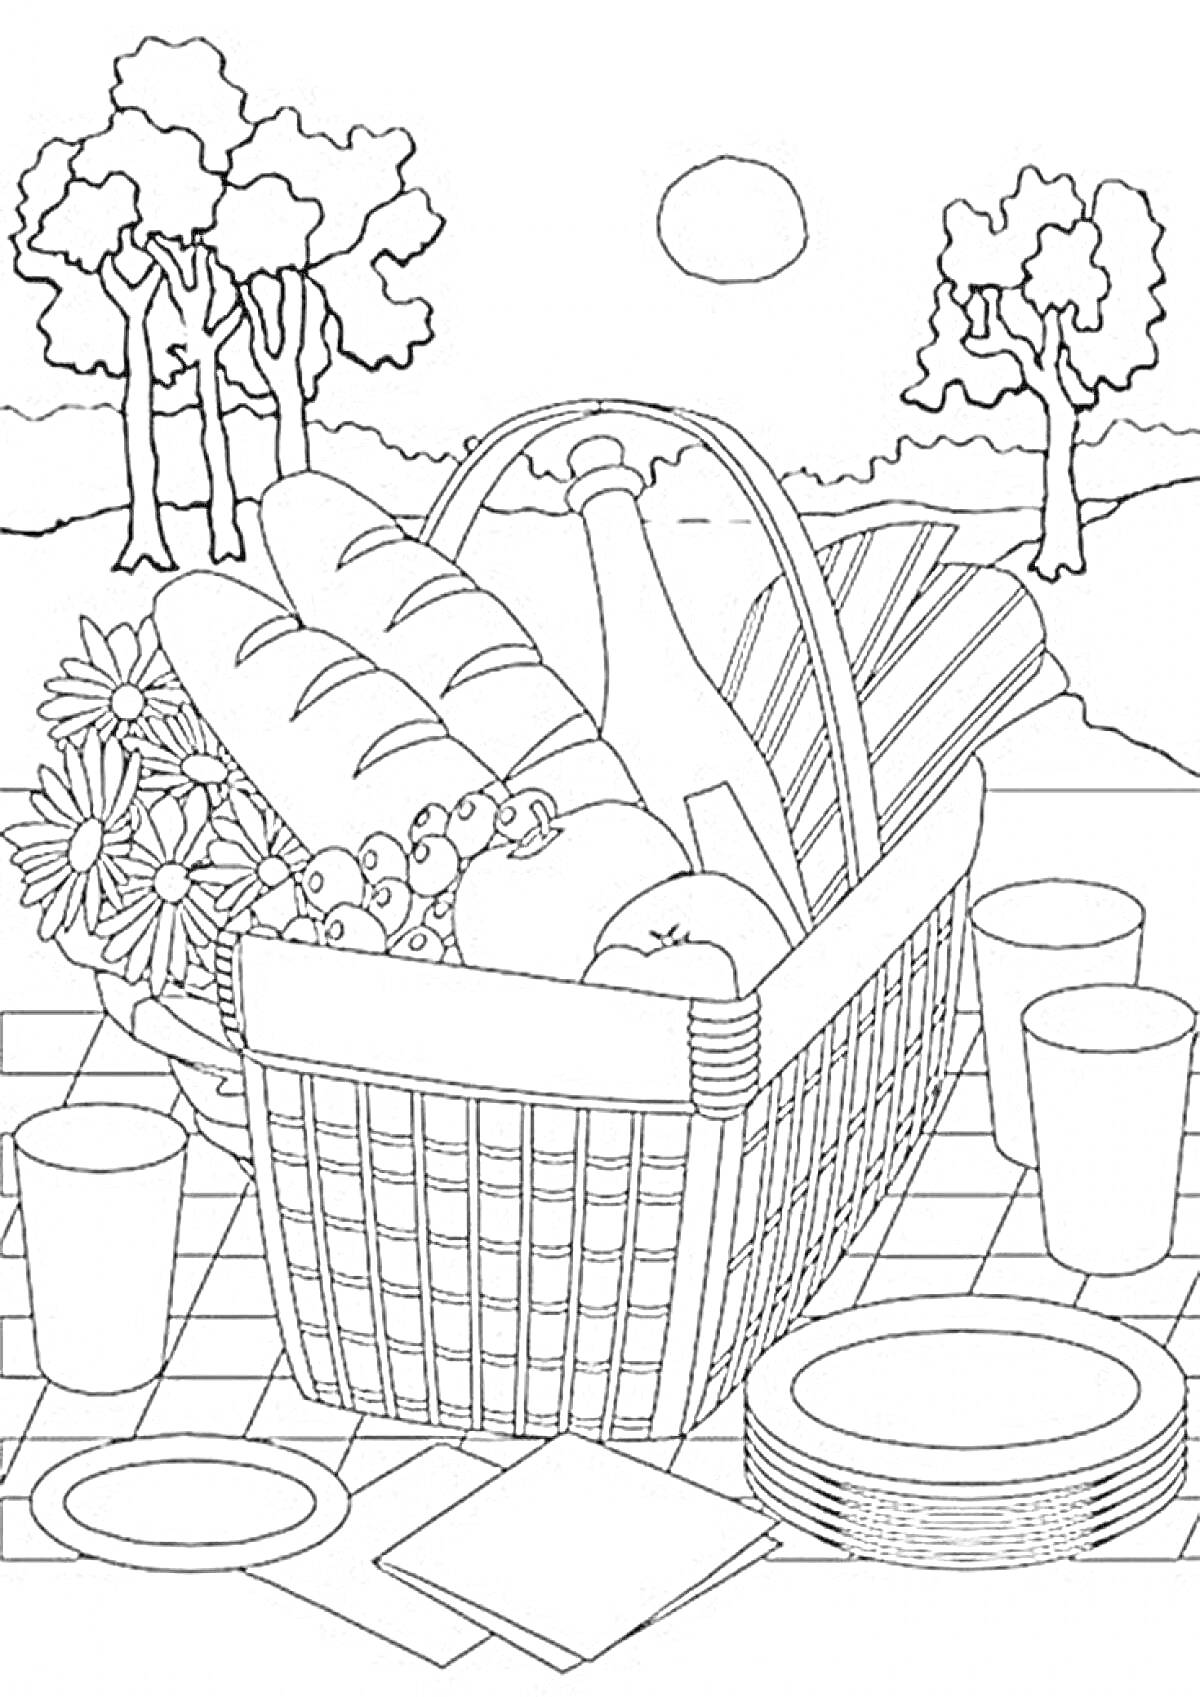 Раскраска Корзина с хлебом, бутылкой, фруктами, цветами и столовыми предметами на природе